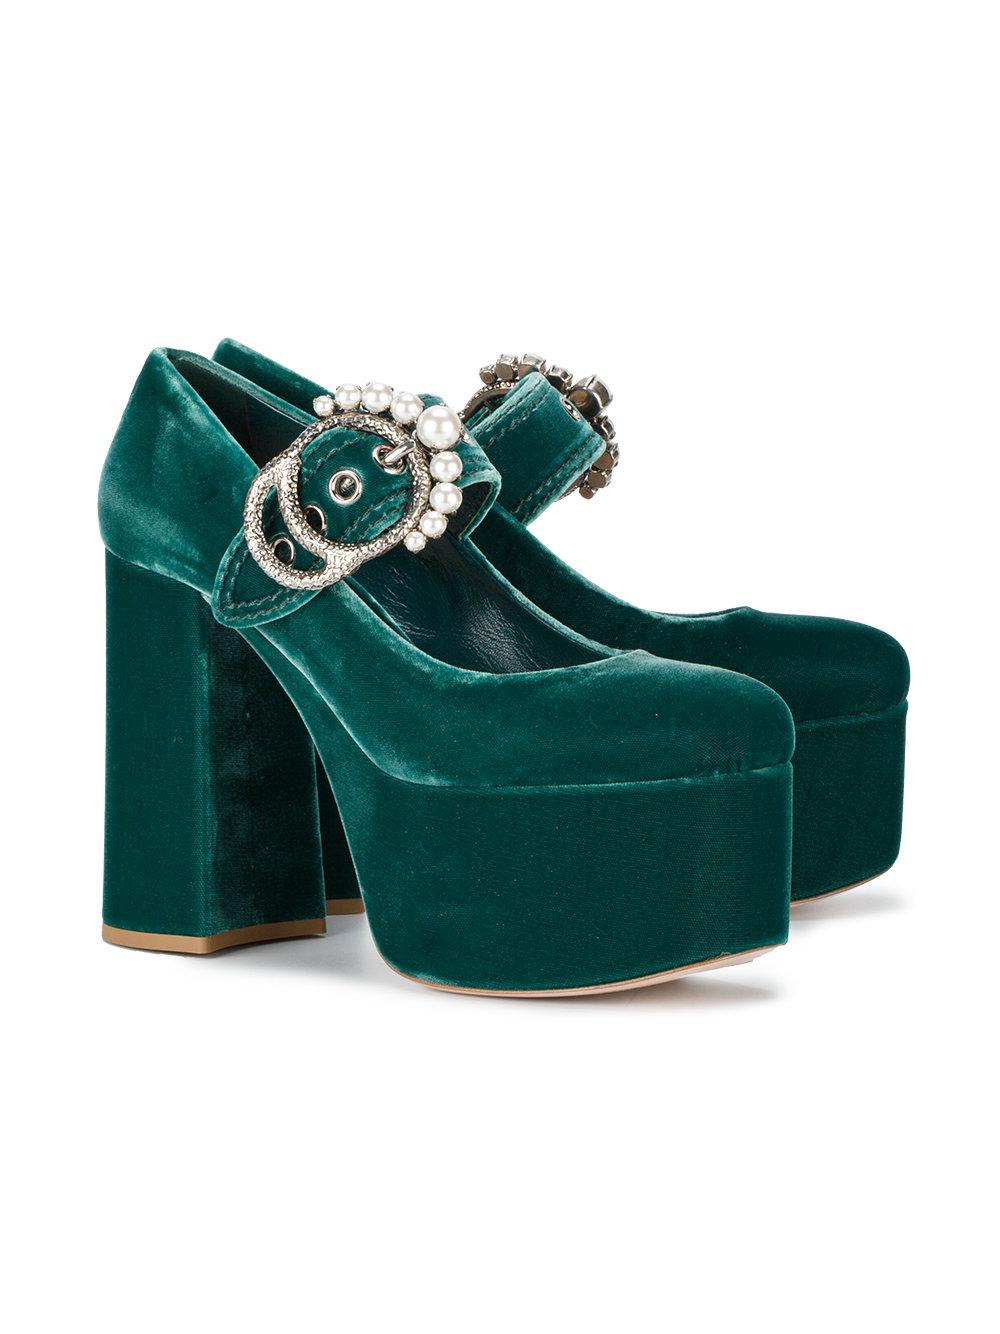 green velvet mary jane shoes